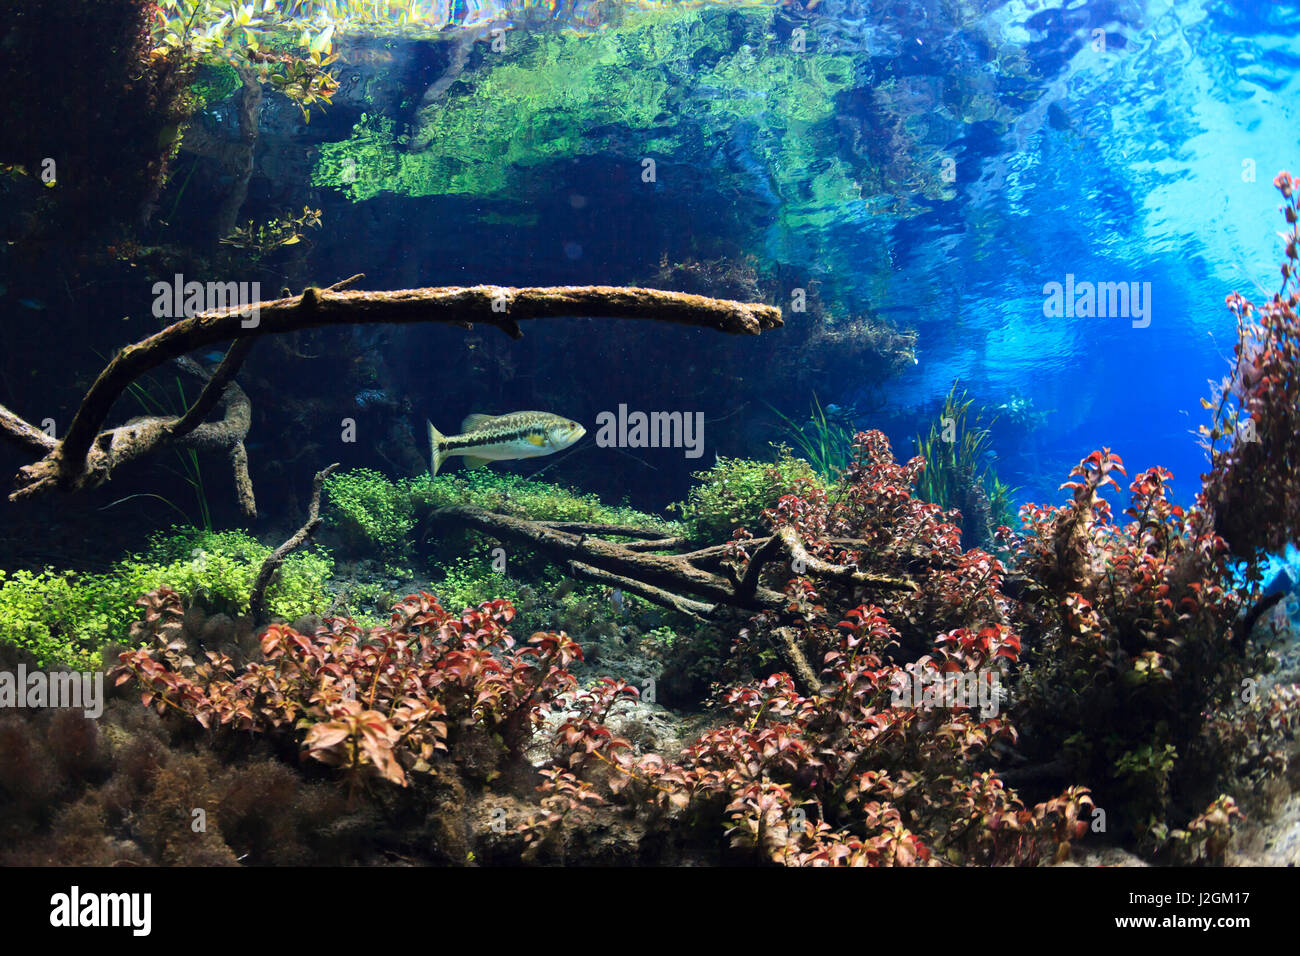 Fotografia subacquea di largemouth bass nelle limpide acque blu della molla Itchetucknee, Florida. Foto Stock